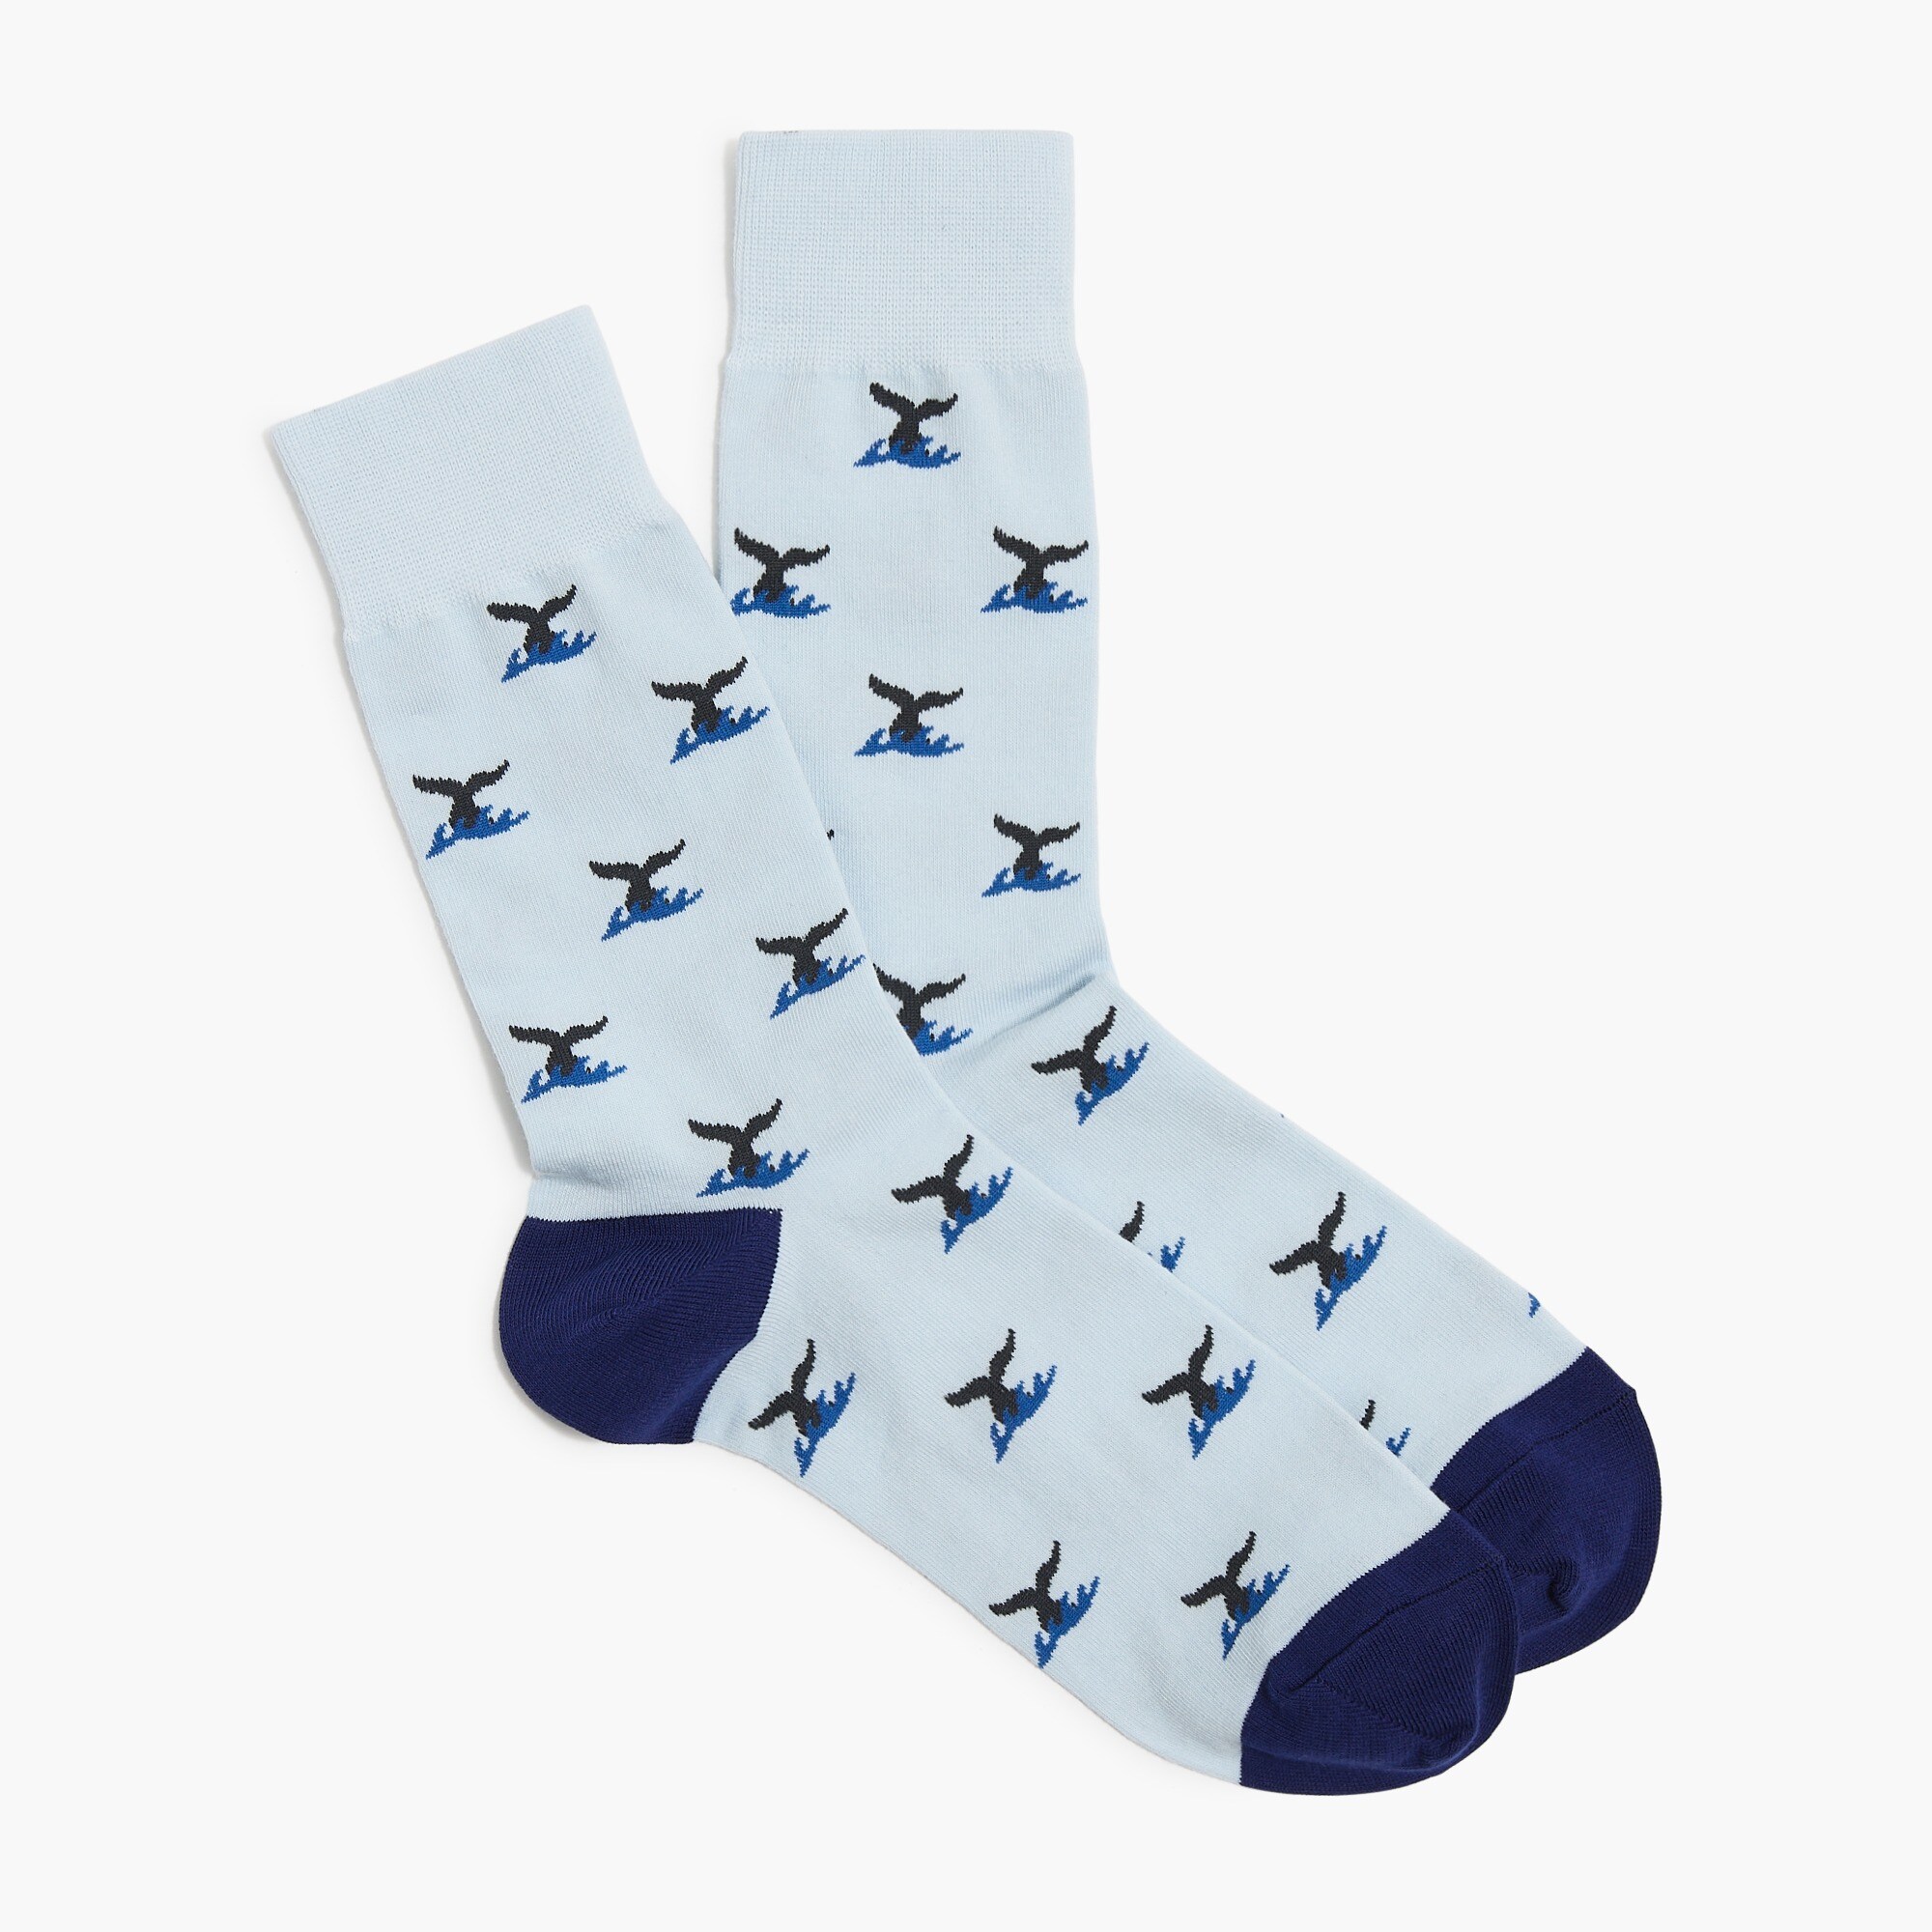 Jcrew Whale socks